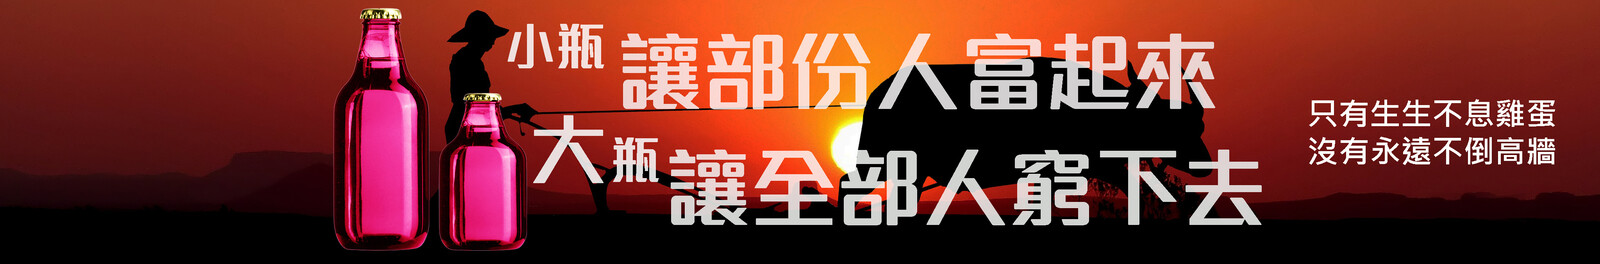 💎 Youtube Banner 💎
Client︰三指世界
Website (Client)︰http://threefingersworld.dynu.net | http://www.youtube.com/三指世界